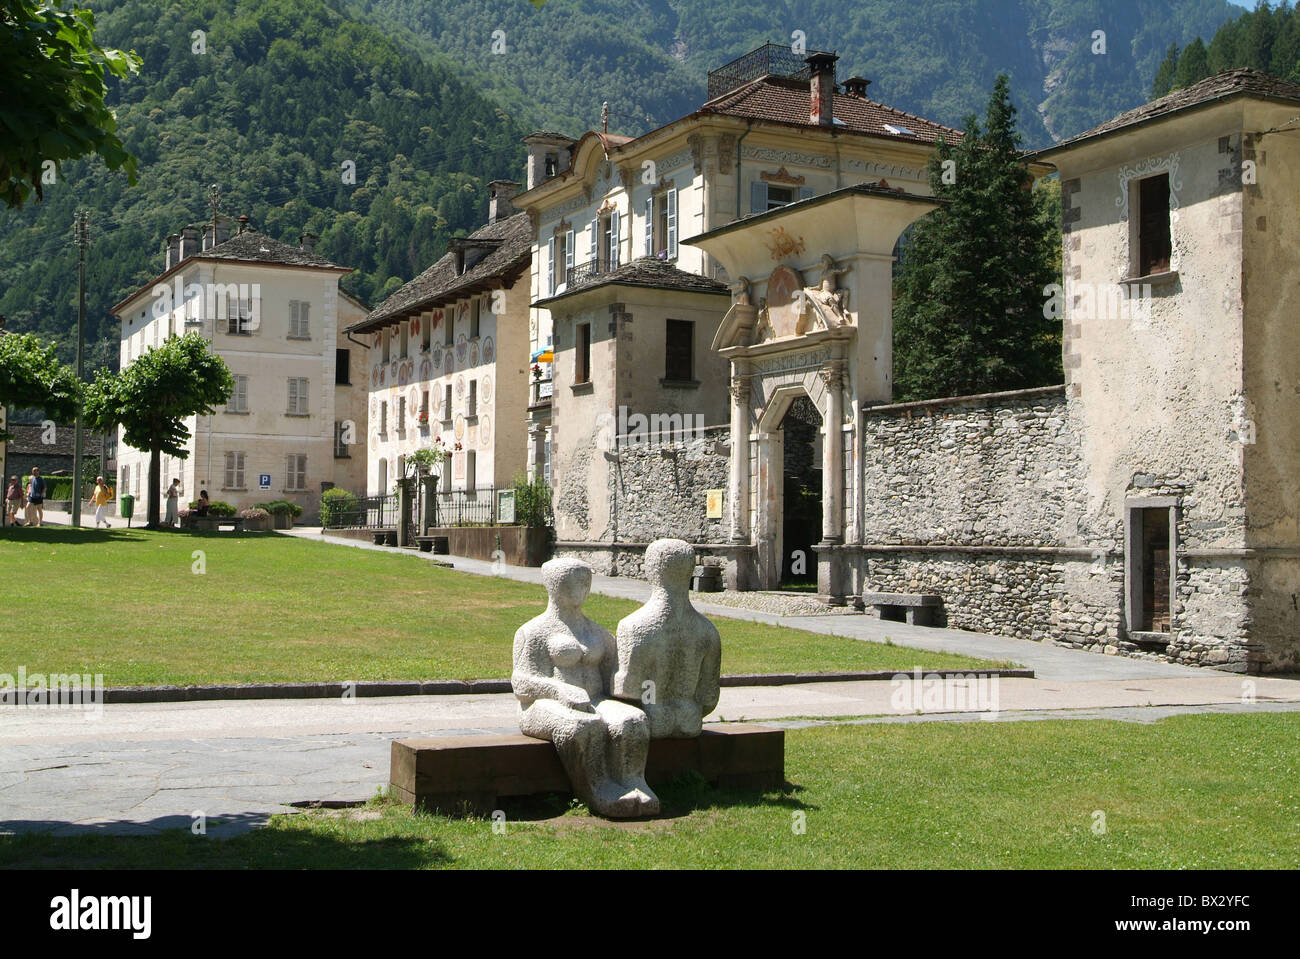 Cevio village villaggio posto le case patrizie sculture case case Valle Maggia Svizzera Europa cantone Foto Stock